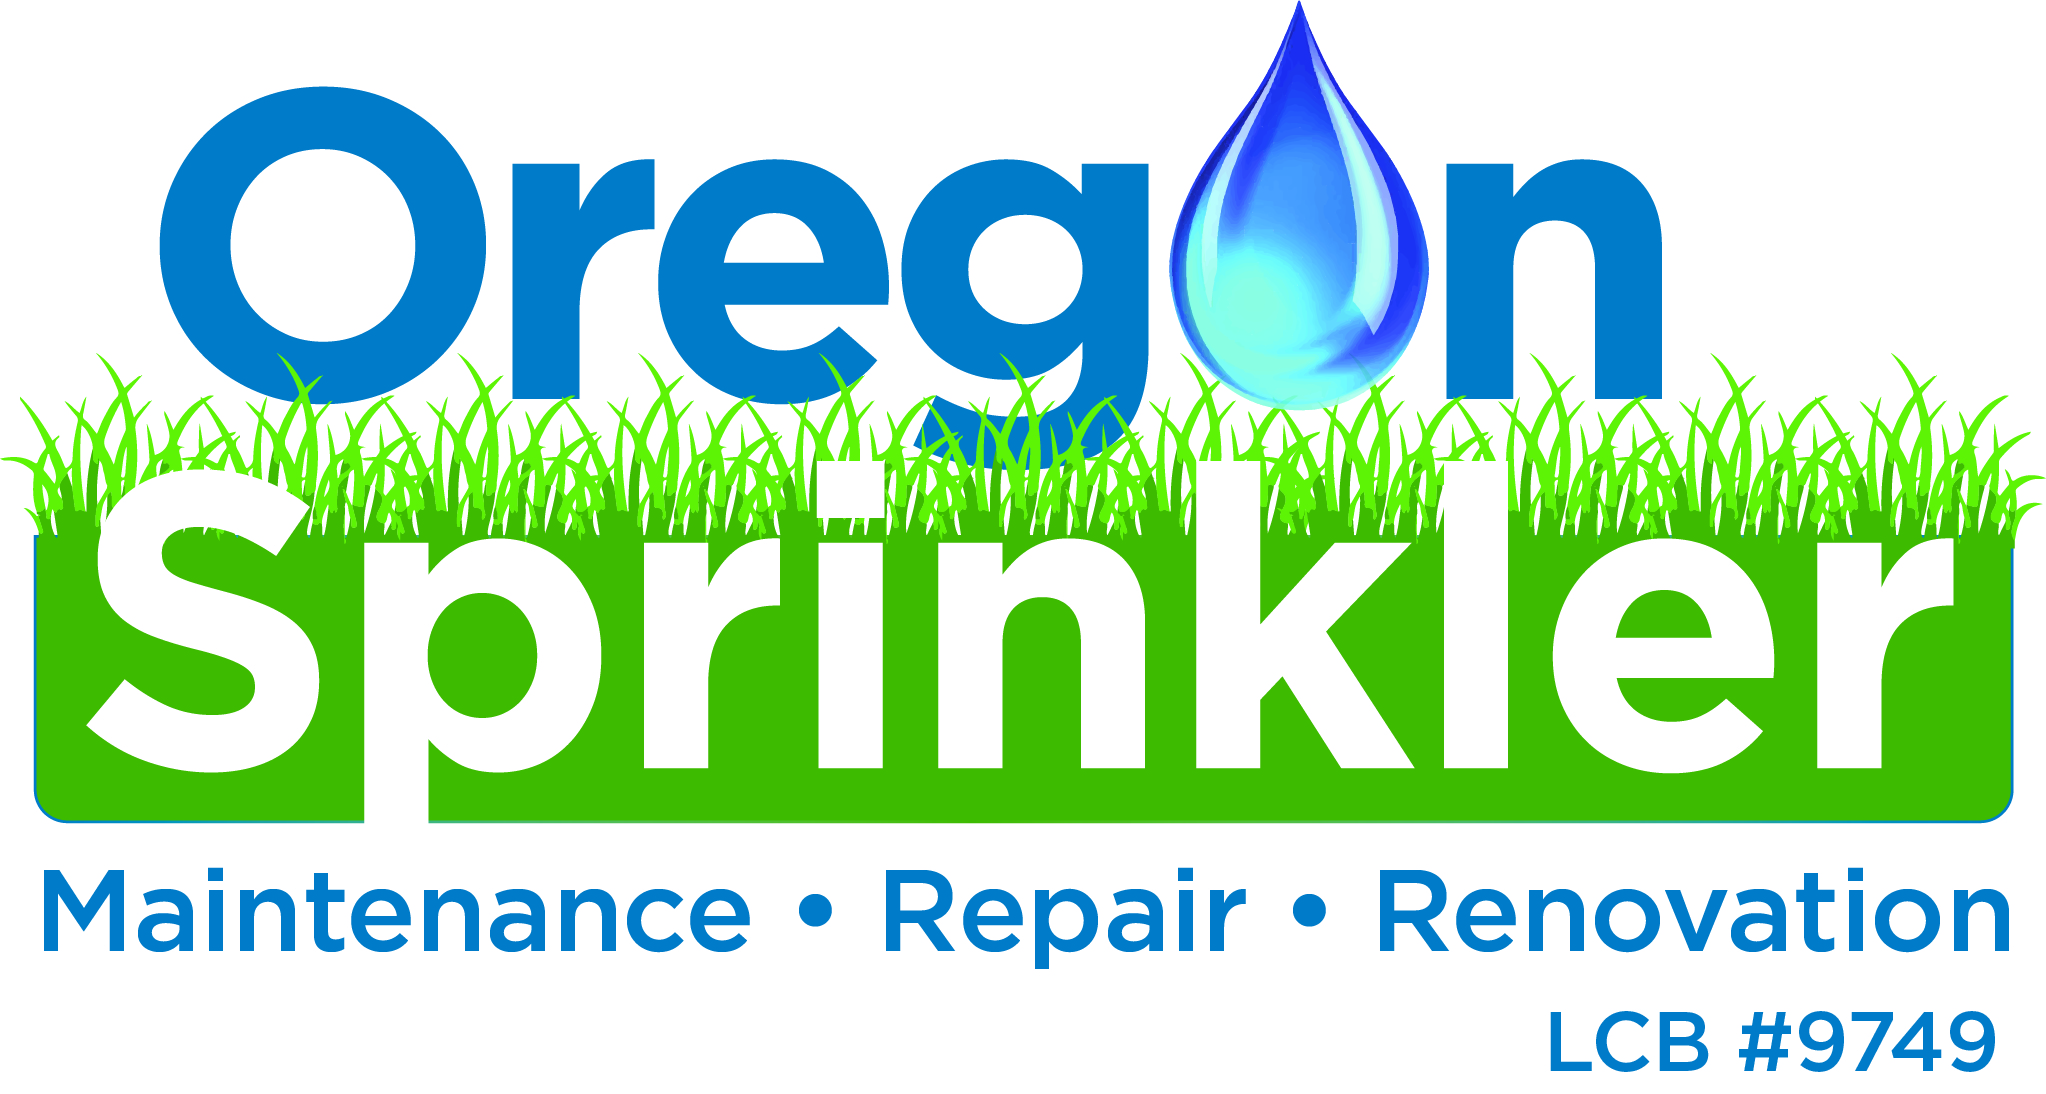 Oregon Sprinkler Logo